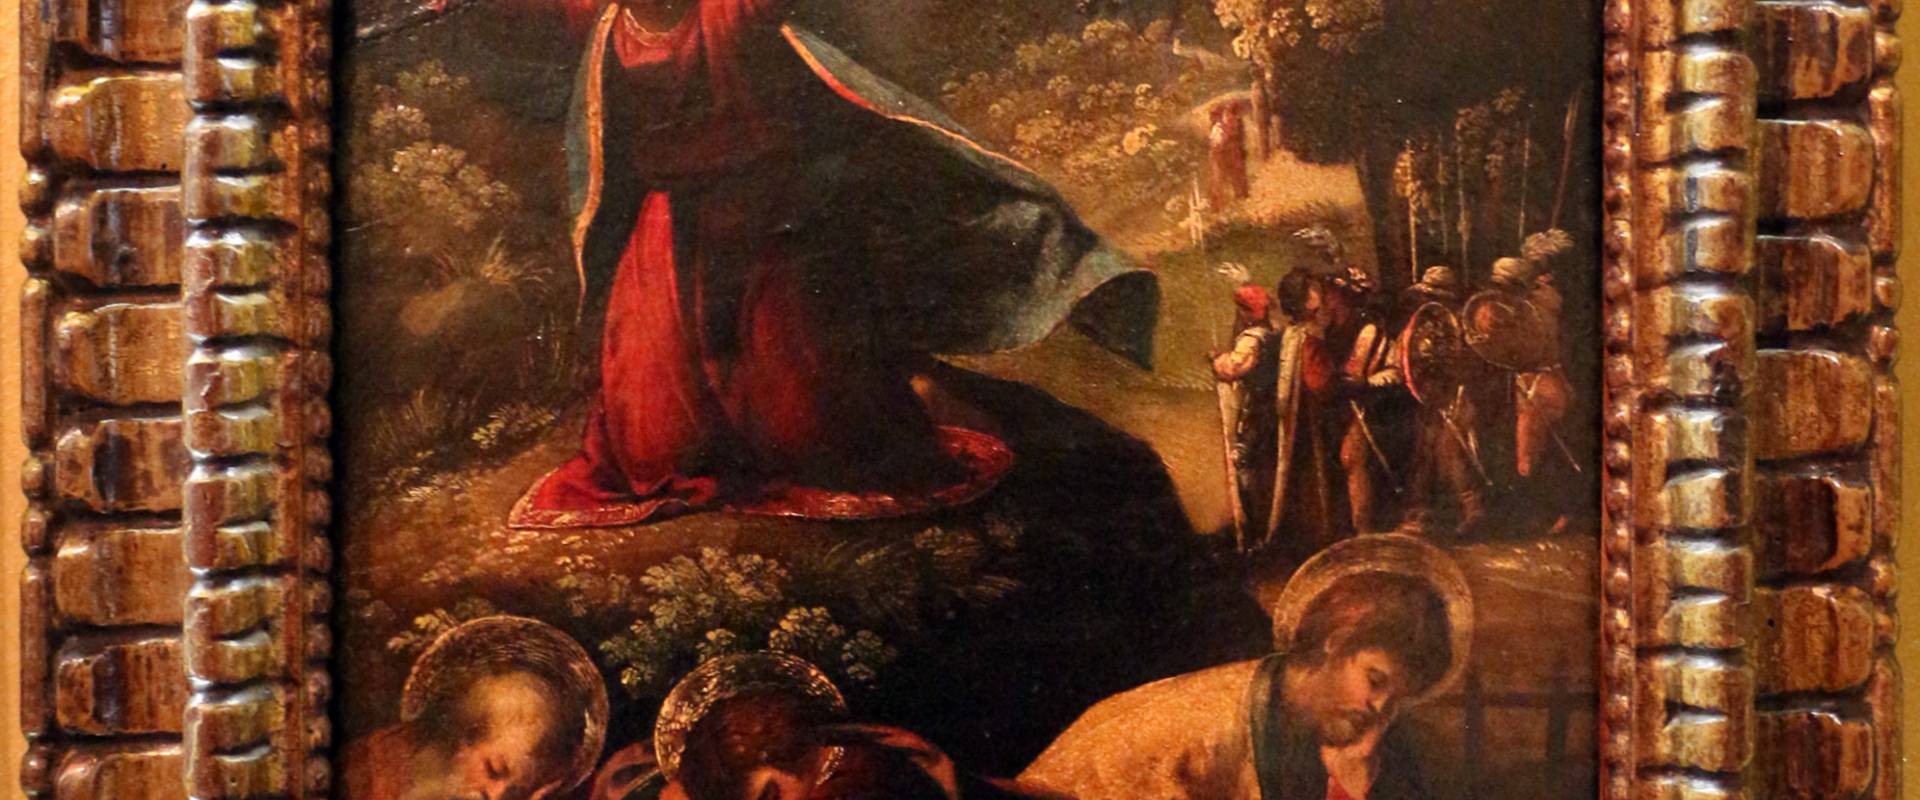 Dosso dossi, cristo nell'orto degli ulivi, 1516-20 ca. 01 foto di Sailko